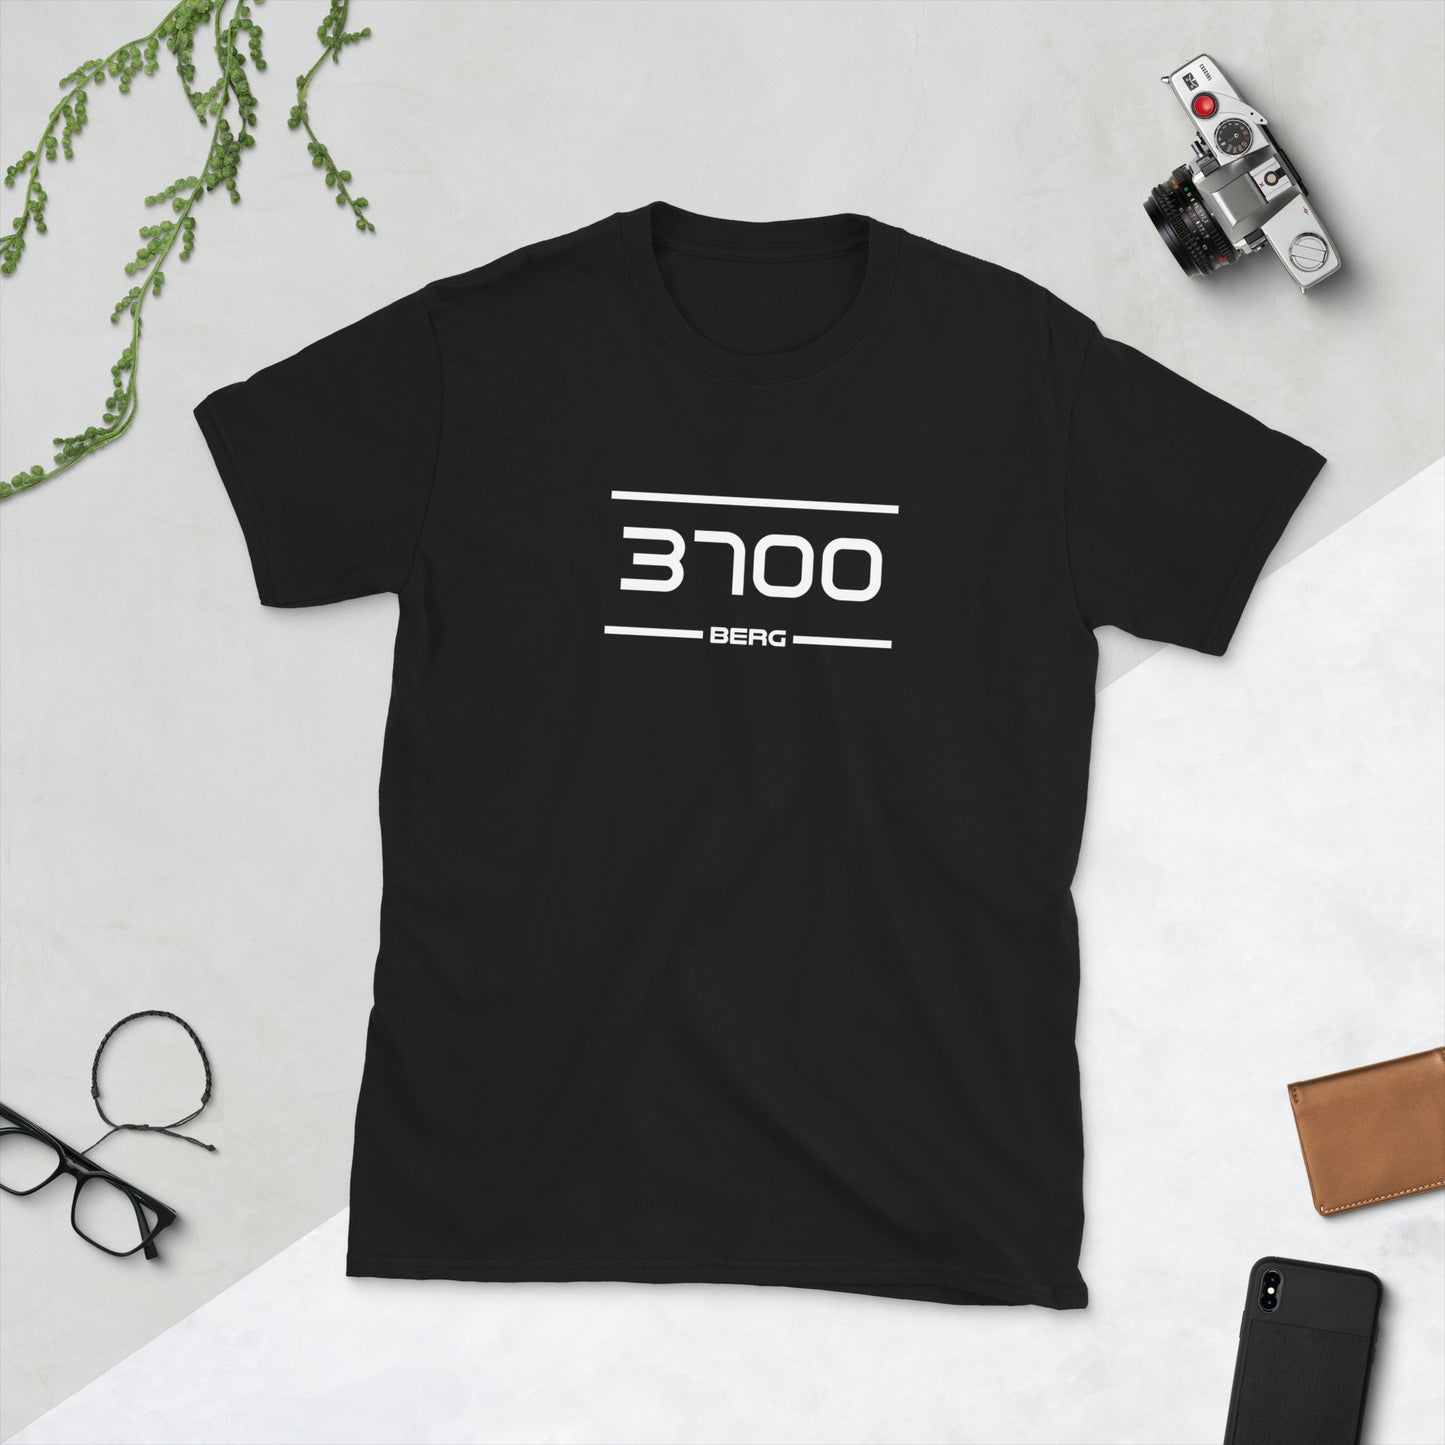 Tshirt - 3700 - Berg